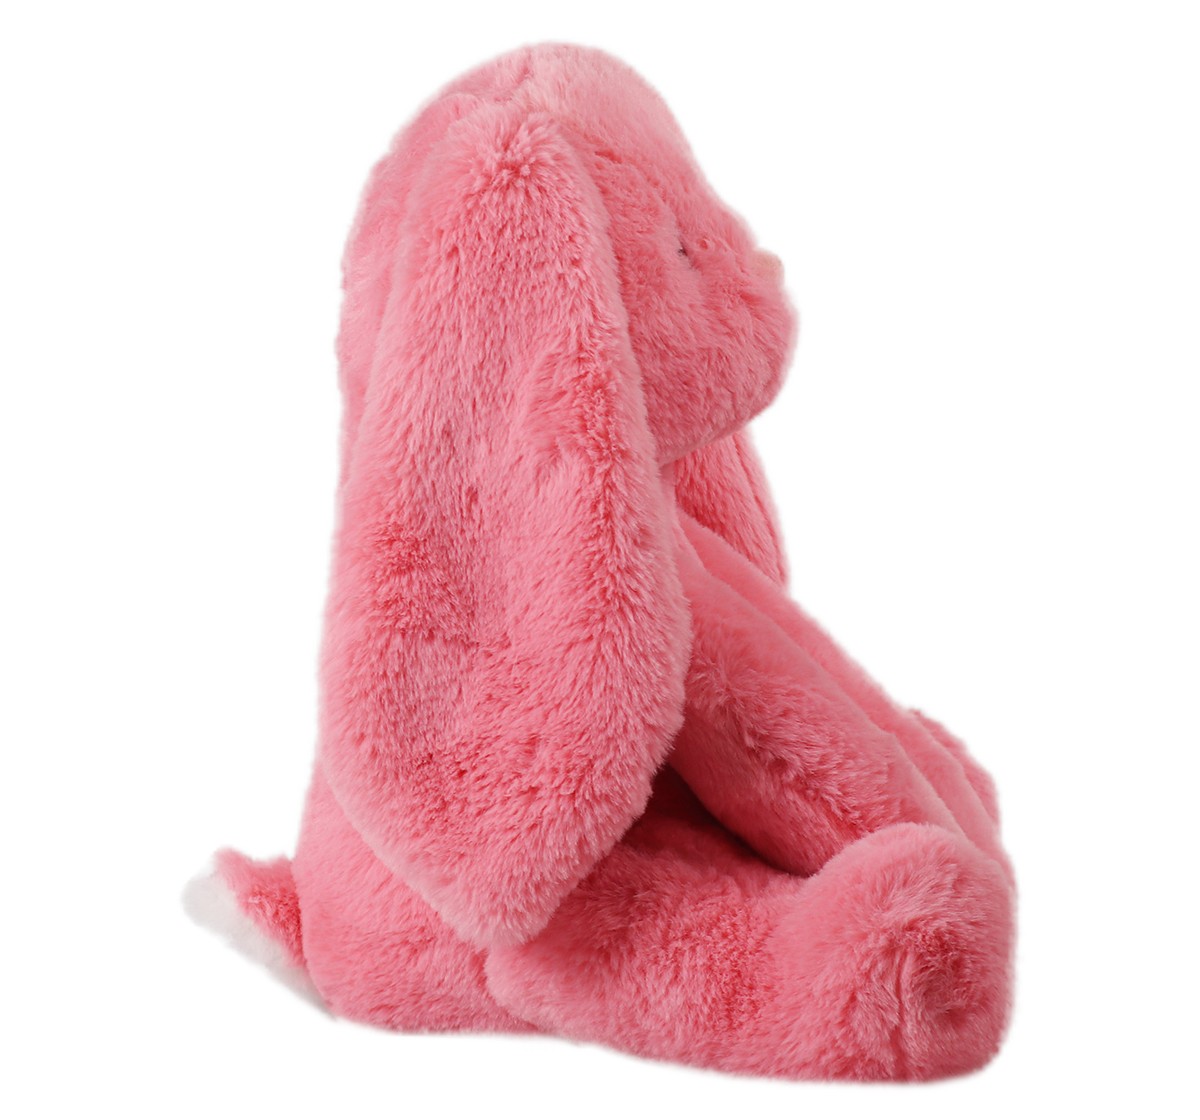 Mirada 35cm bunny soft toy Multicolor 3Y+